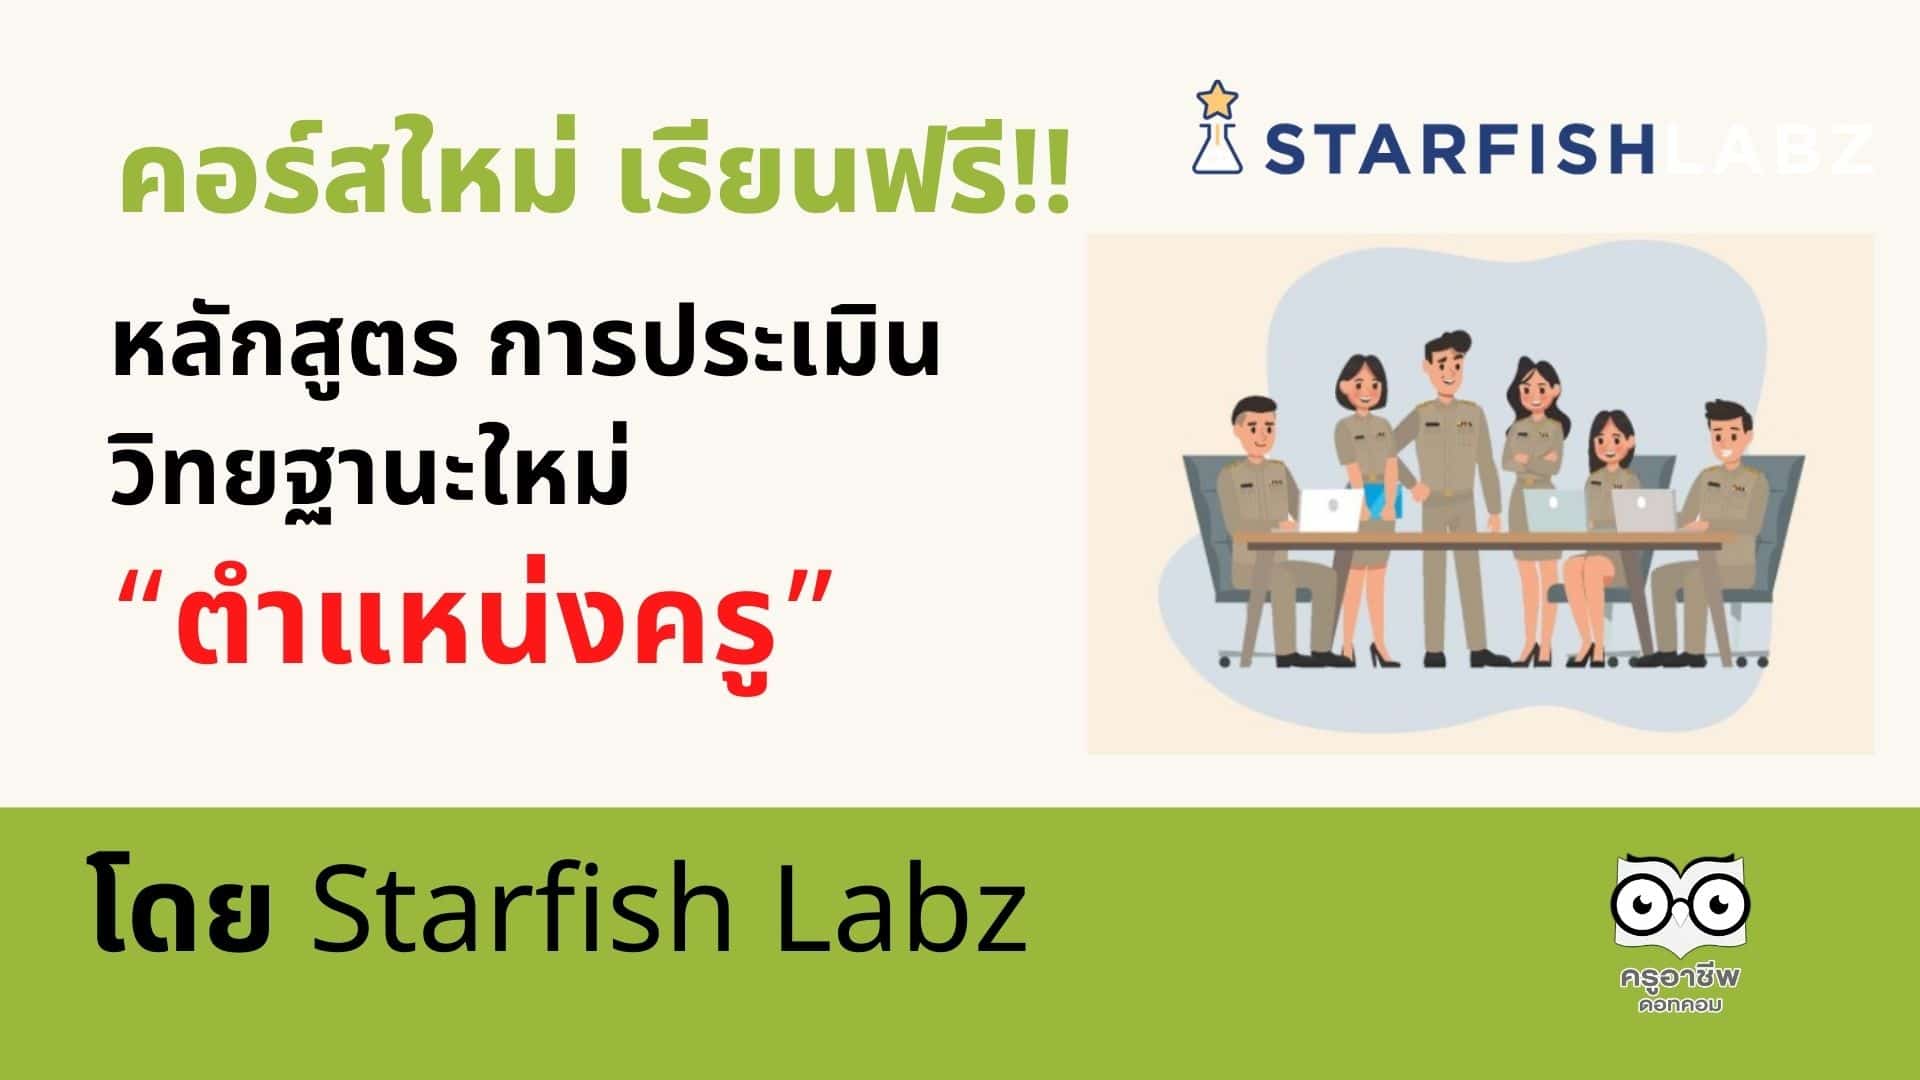 คอร์สใหม่ เรียนฟรี!! หลักสูตร การประเมินเพื่อขอมี / เลื่อนวิทยฐานะใหม่ “ตำแหน่งครู” โดย Starfish Labz